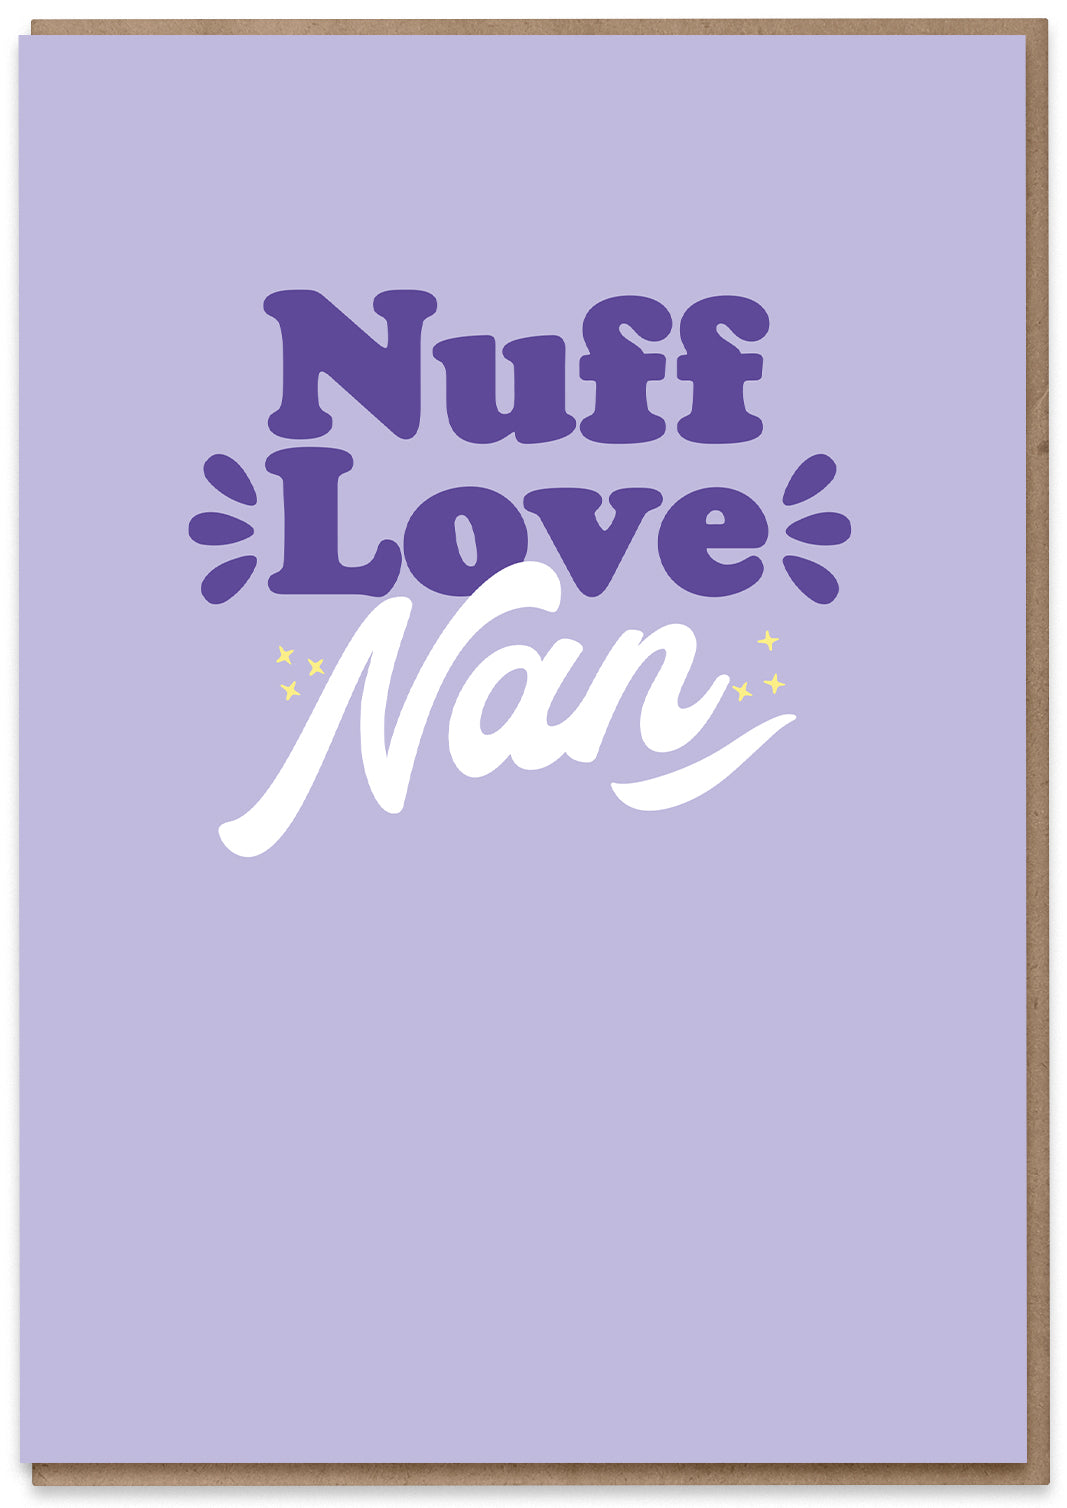 Nuff Love Nan